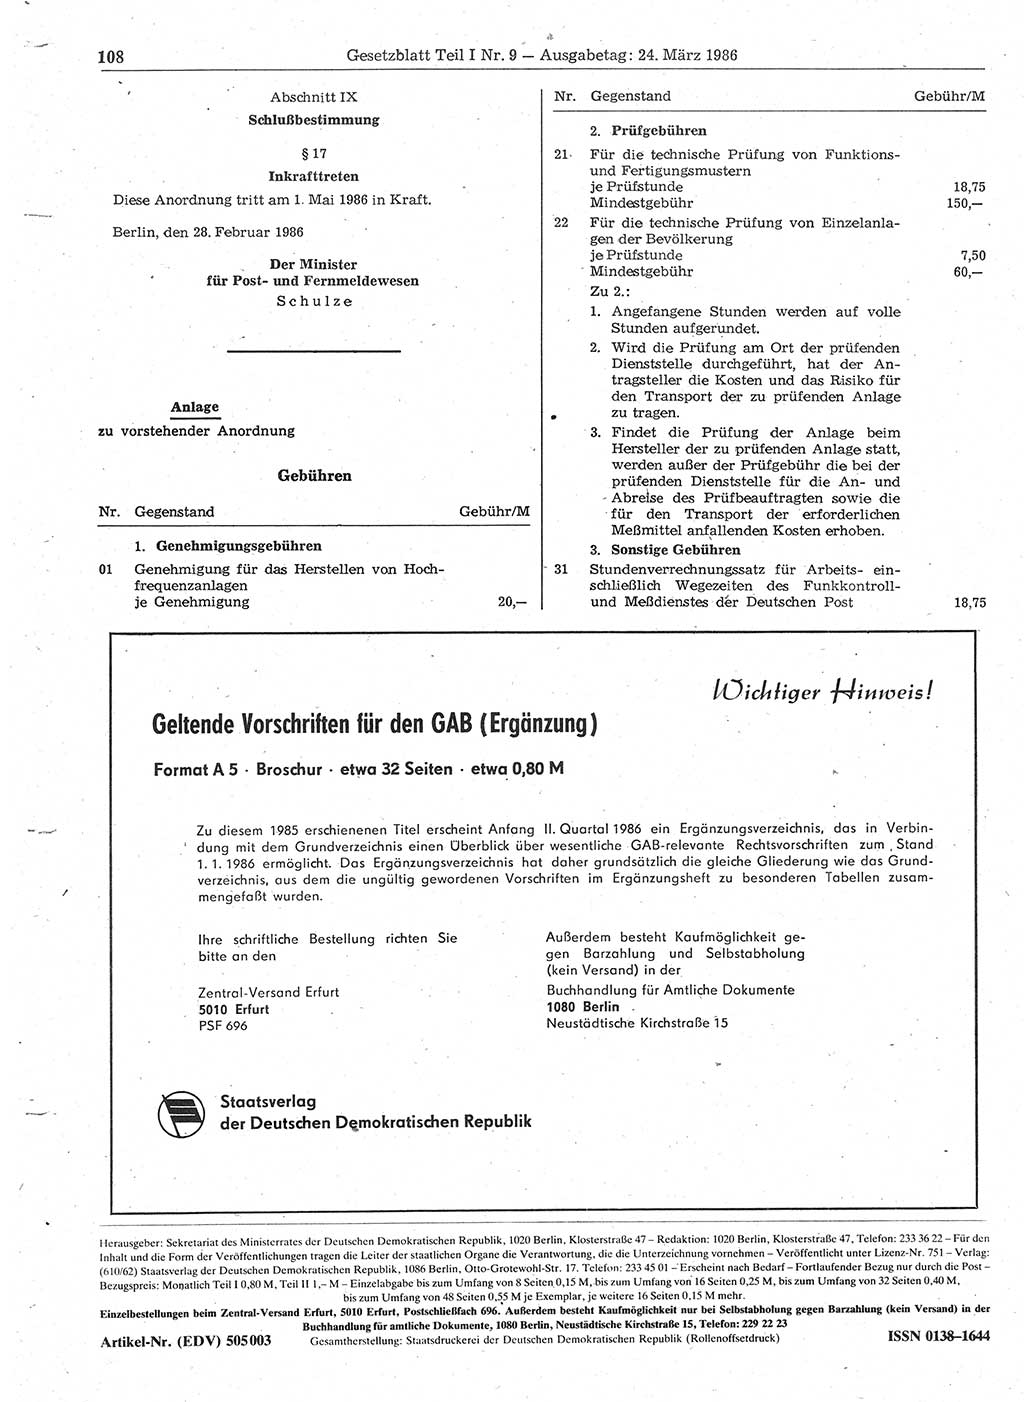 Gesetzblatt (GBl.) der Deutschen Demokratischen Republik (DDR) Teil Ⅰ 1986, Seite 108 (GBl. DDR Ⅰ 1986, S. 108)